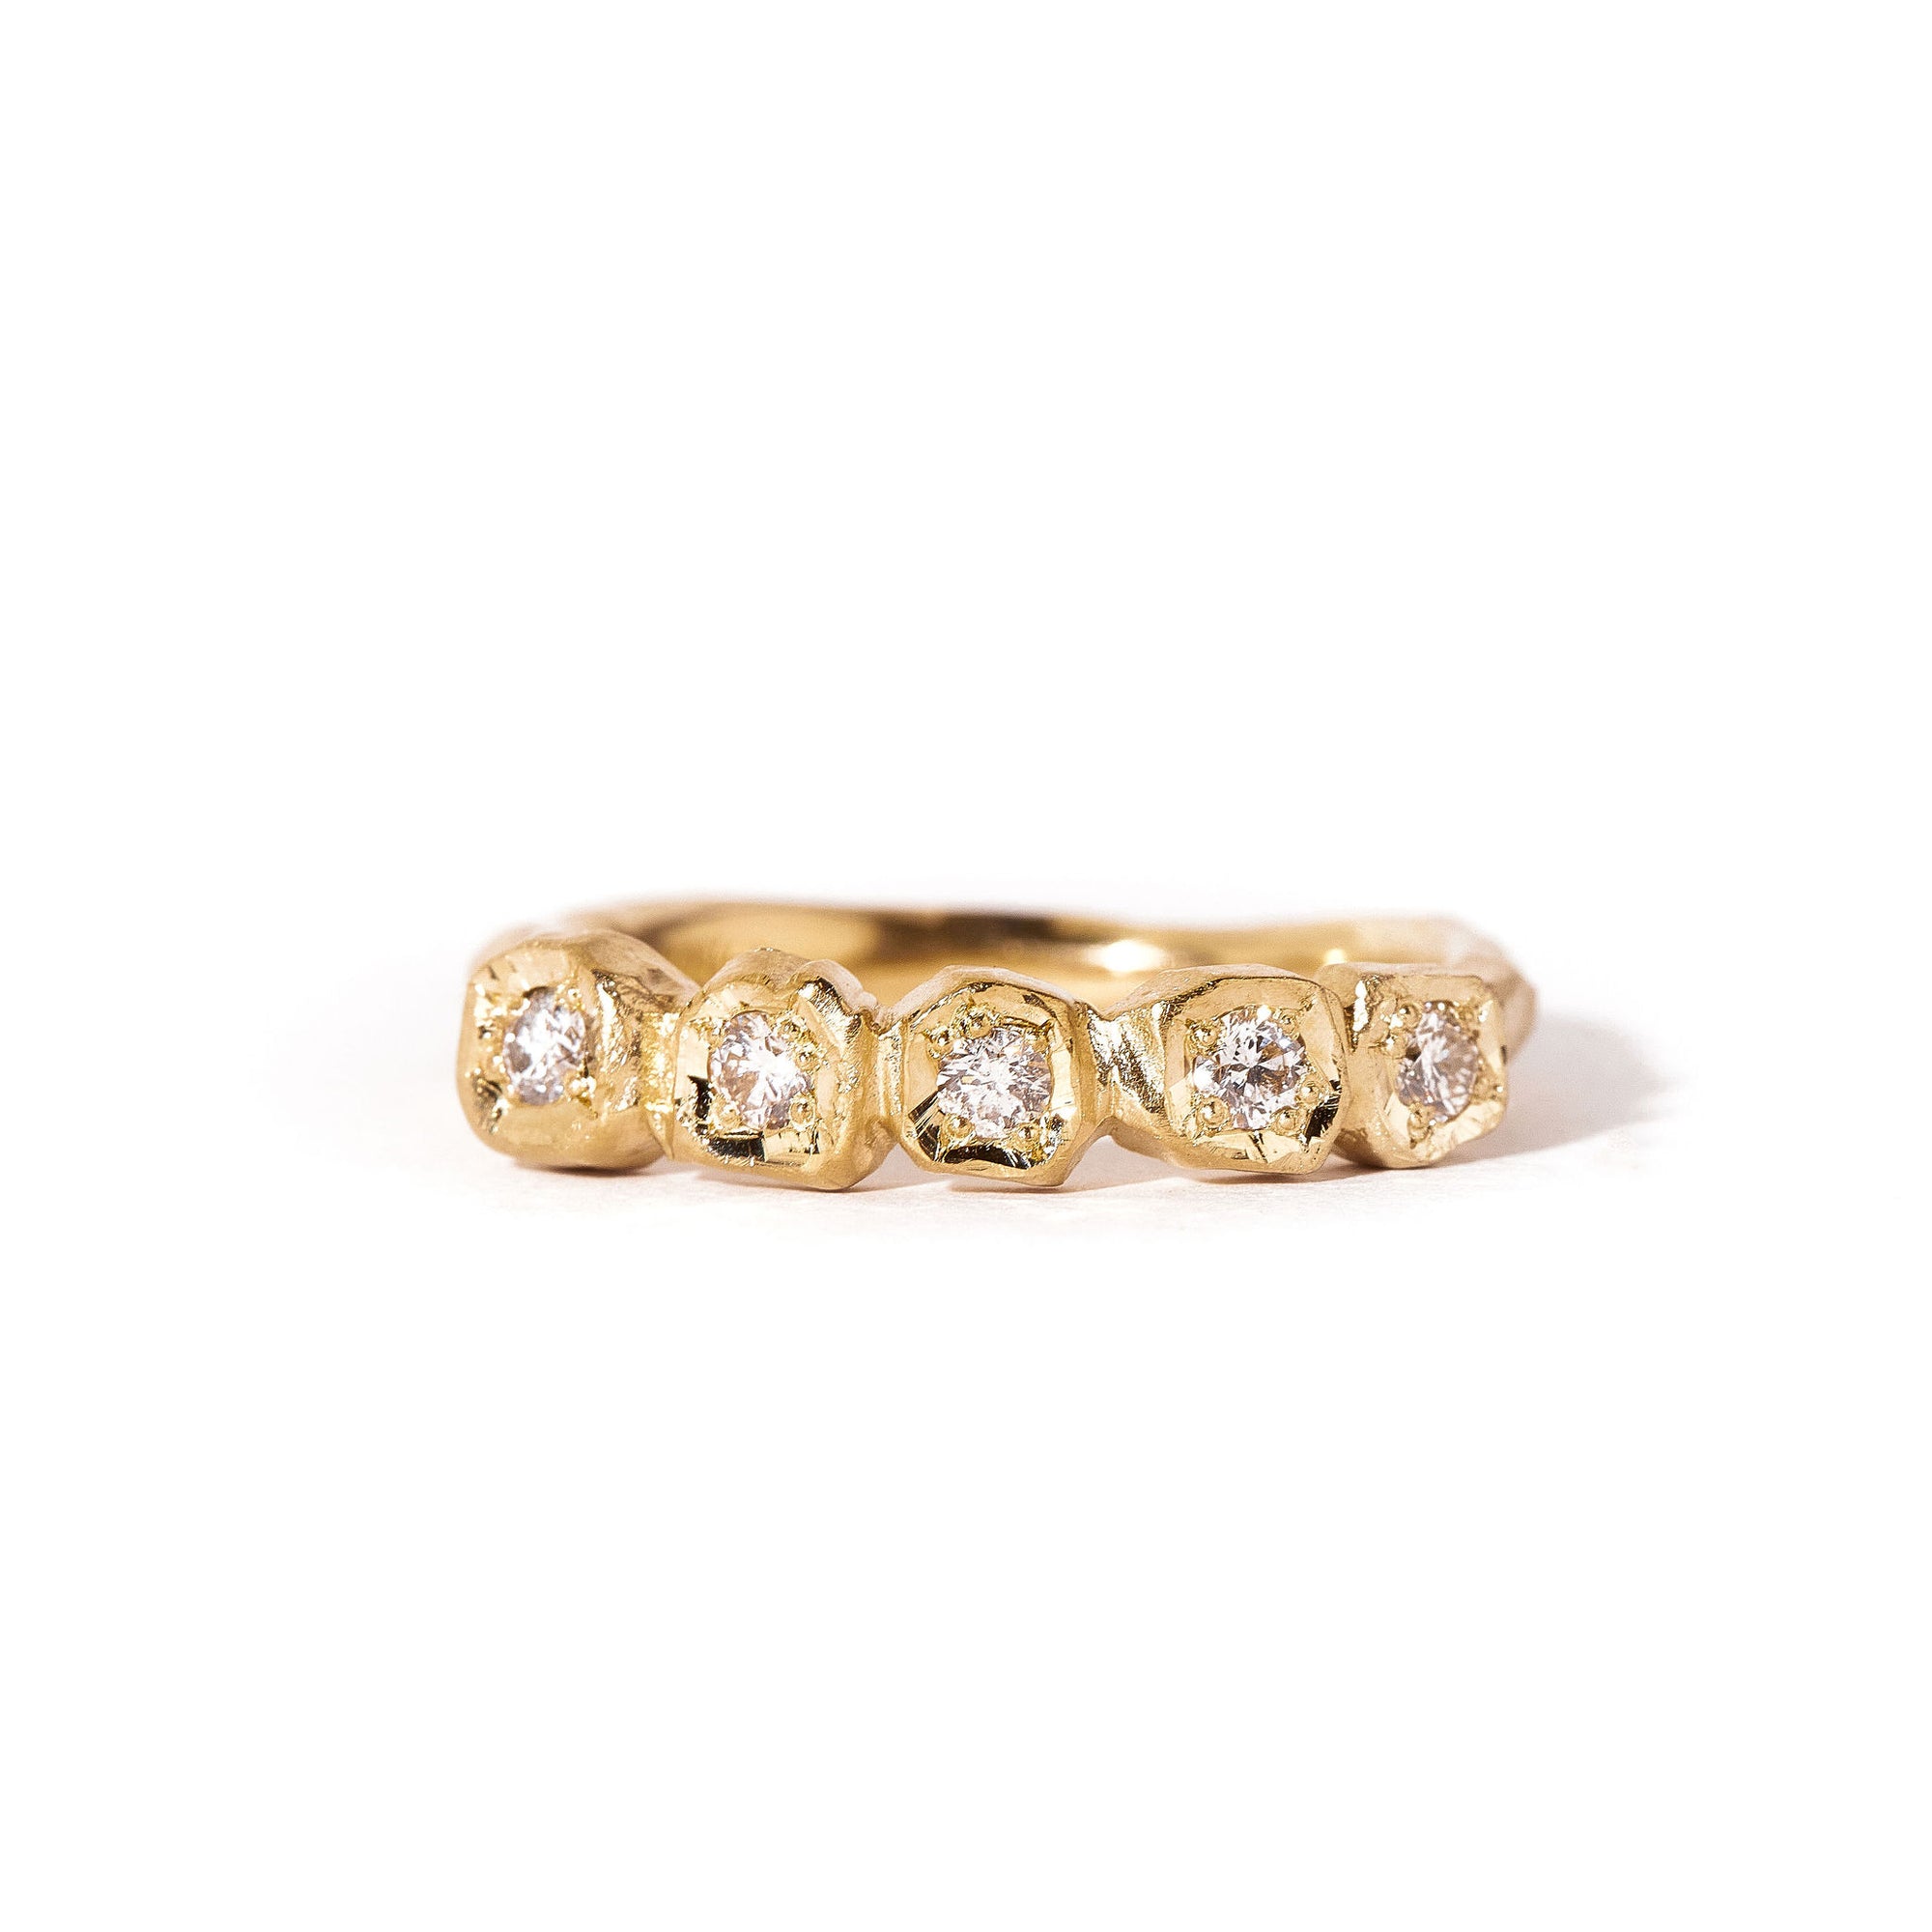  5 Stone Diamond Handmade Ring in 9ct Yellow Gold